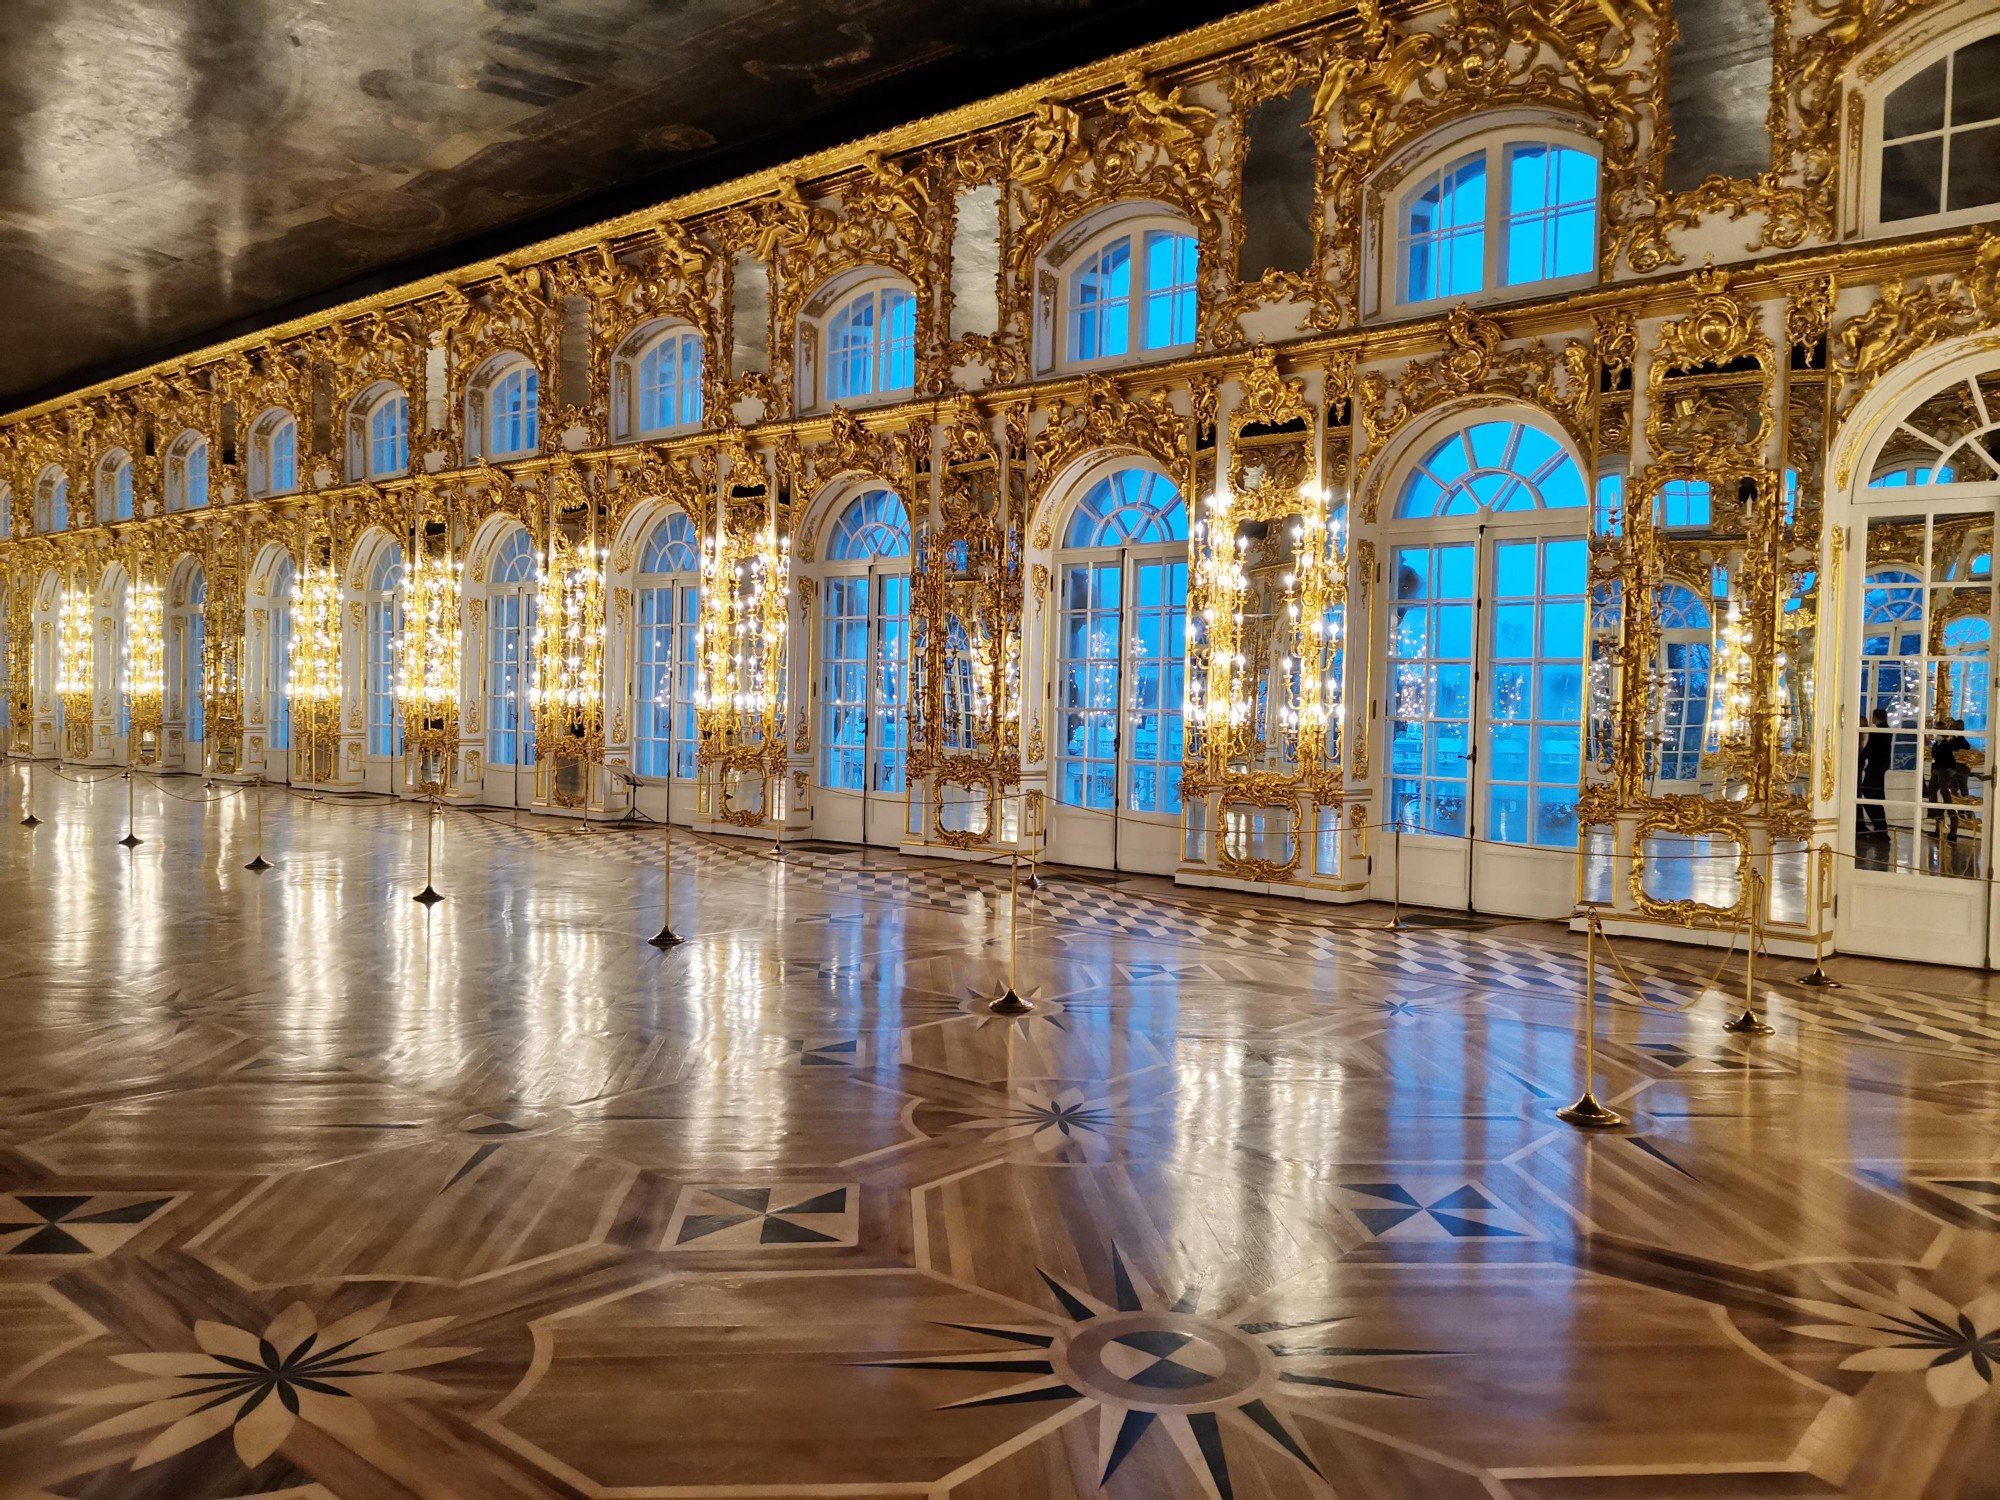 тронный зал екатерининского дворца в царском селе